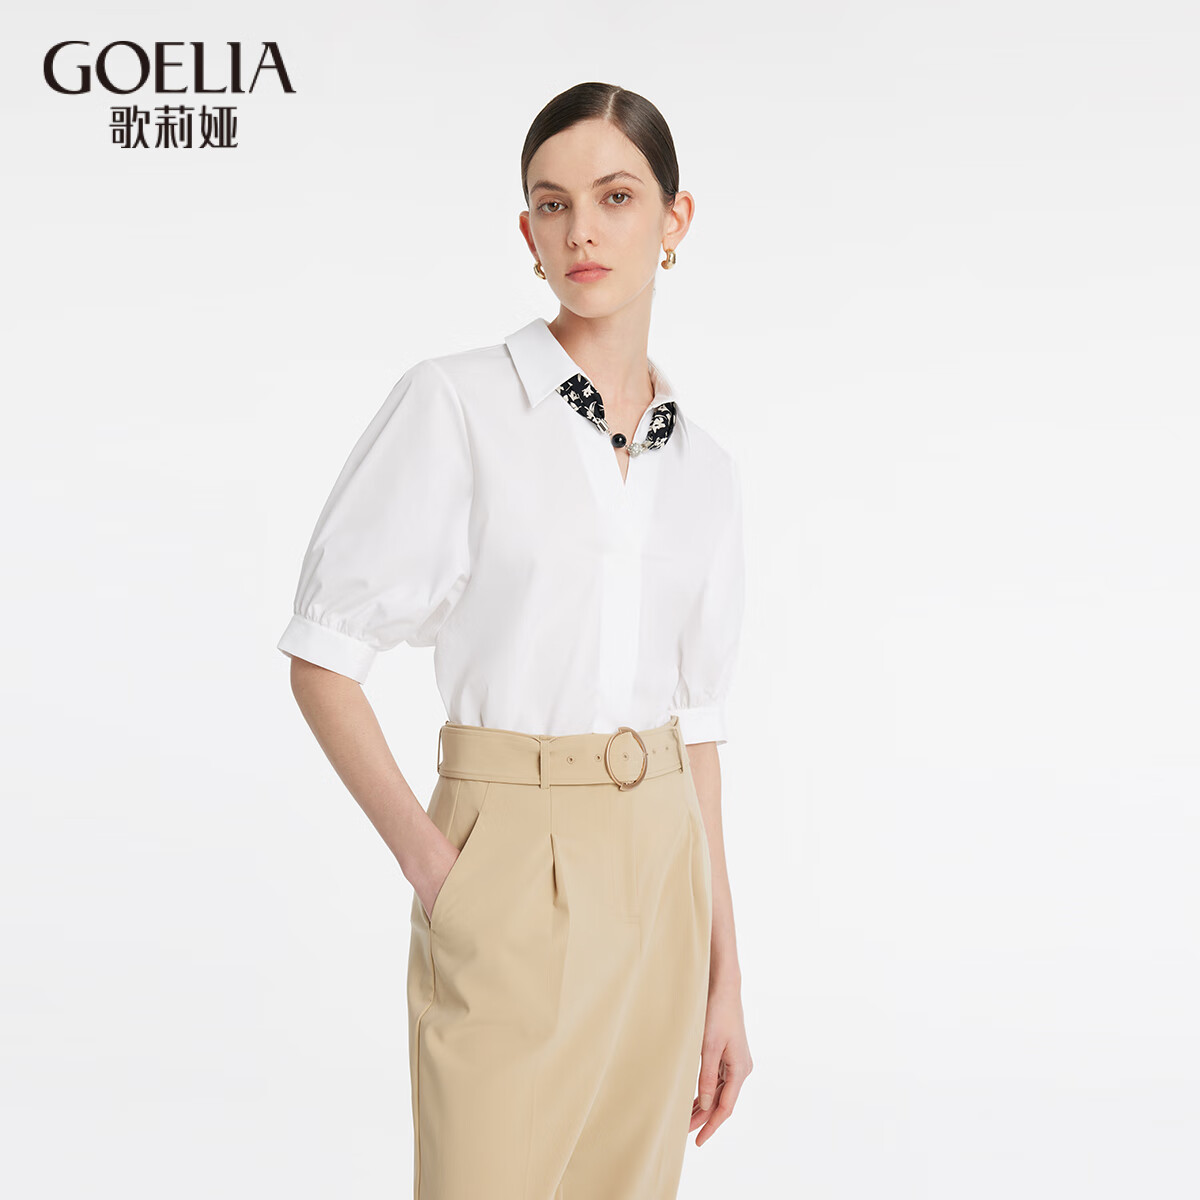 歌莉娅 新品  法式宽松造型感衬衫（配送丝巾）  1C3C3D050 03W本白 S